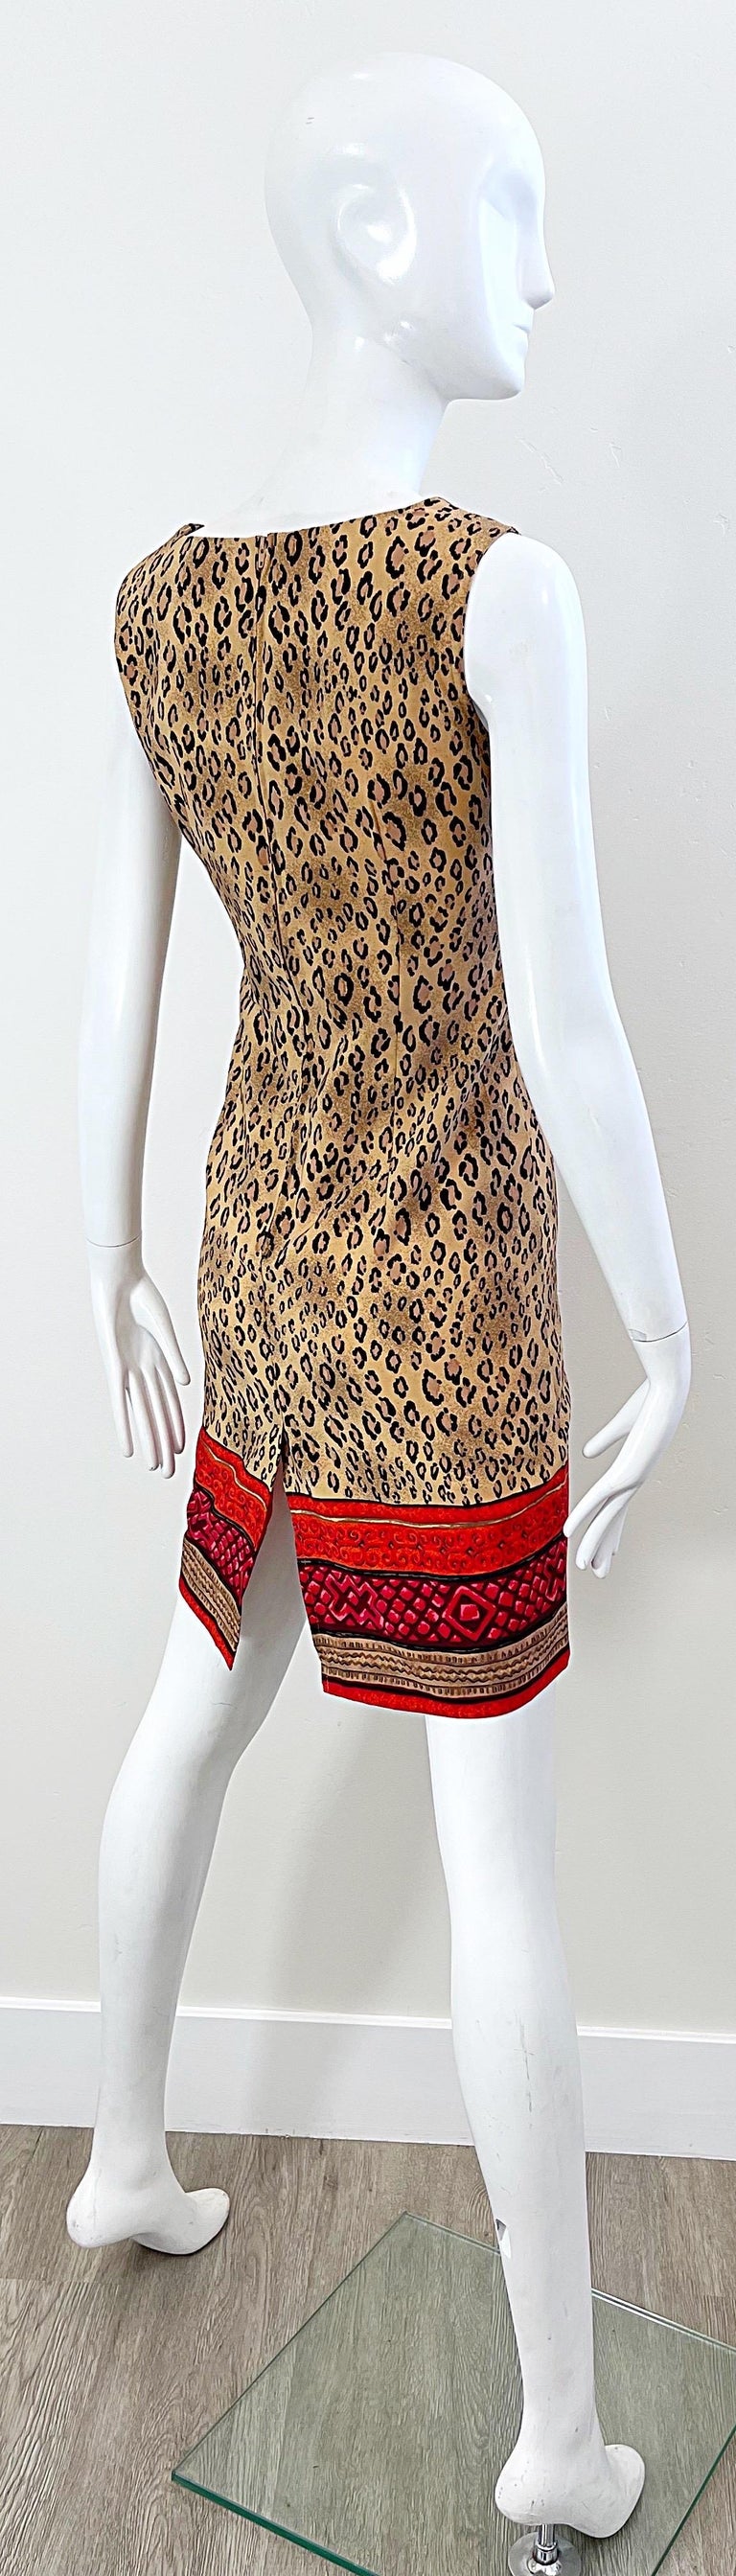 1990s Christian Lacroix Leopard Cheetah Animal Print Size 8 Vintage 90s Dress For Sale 9